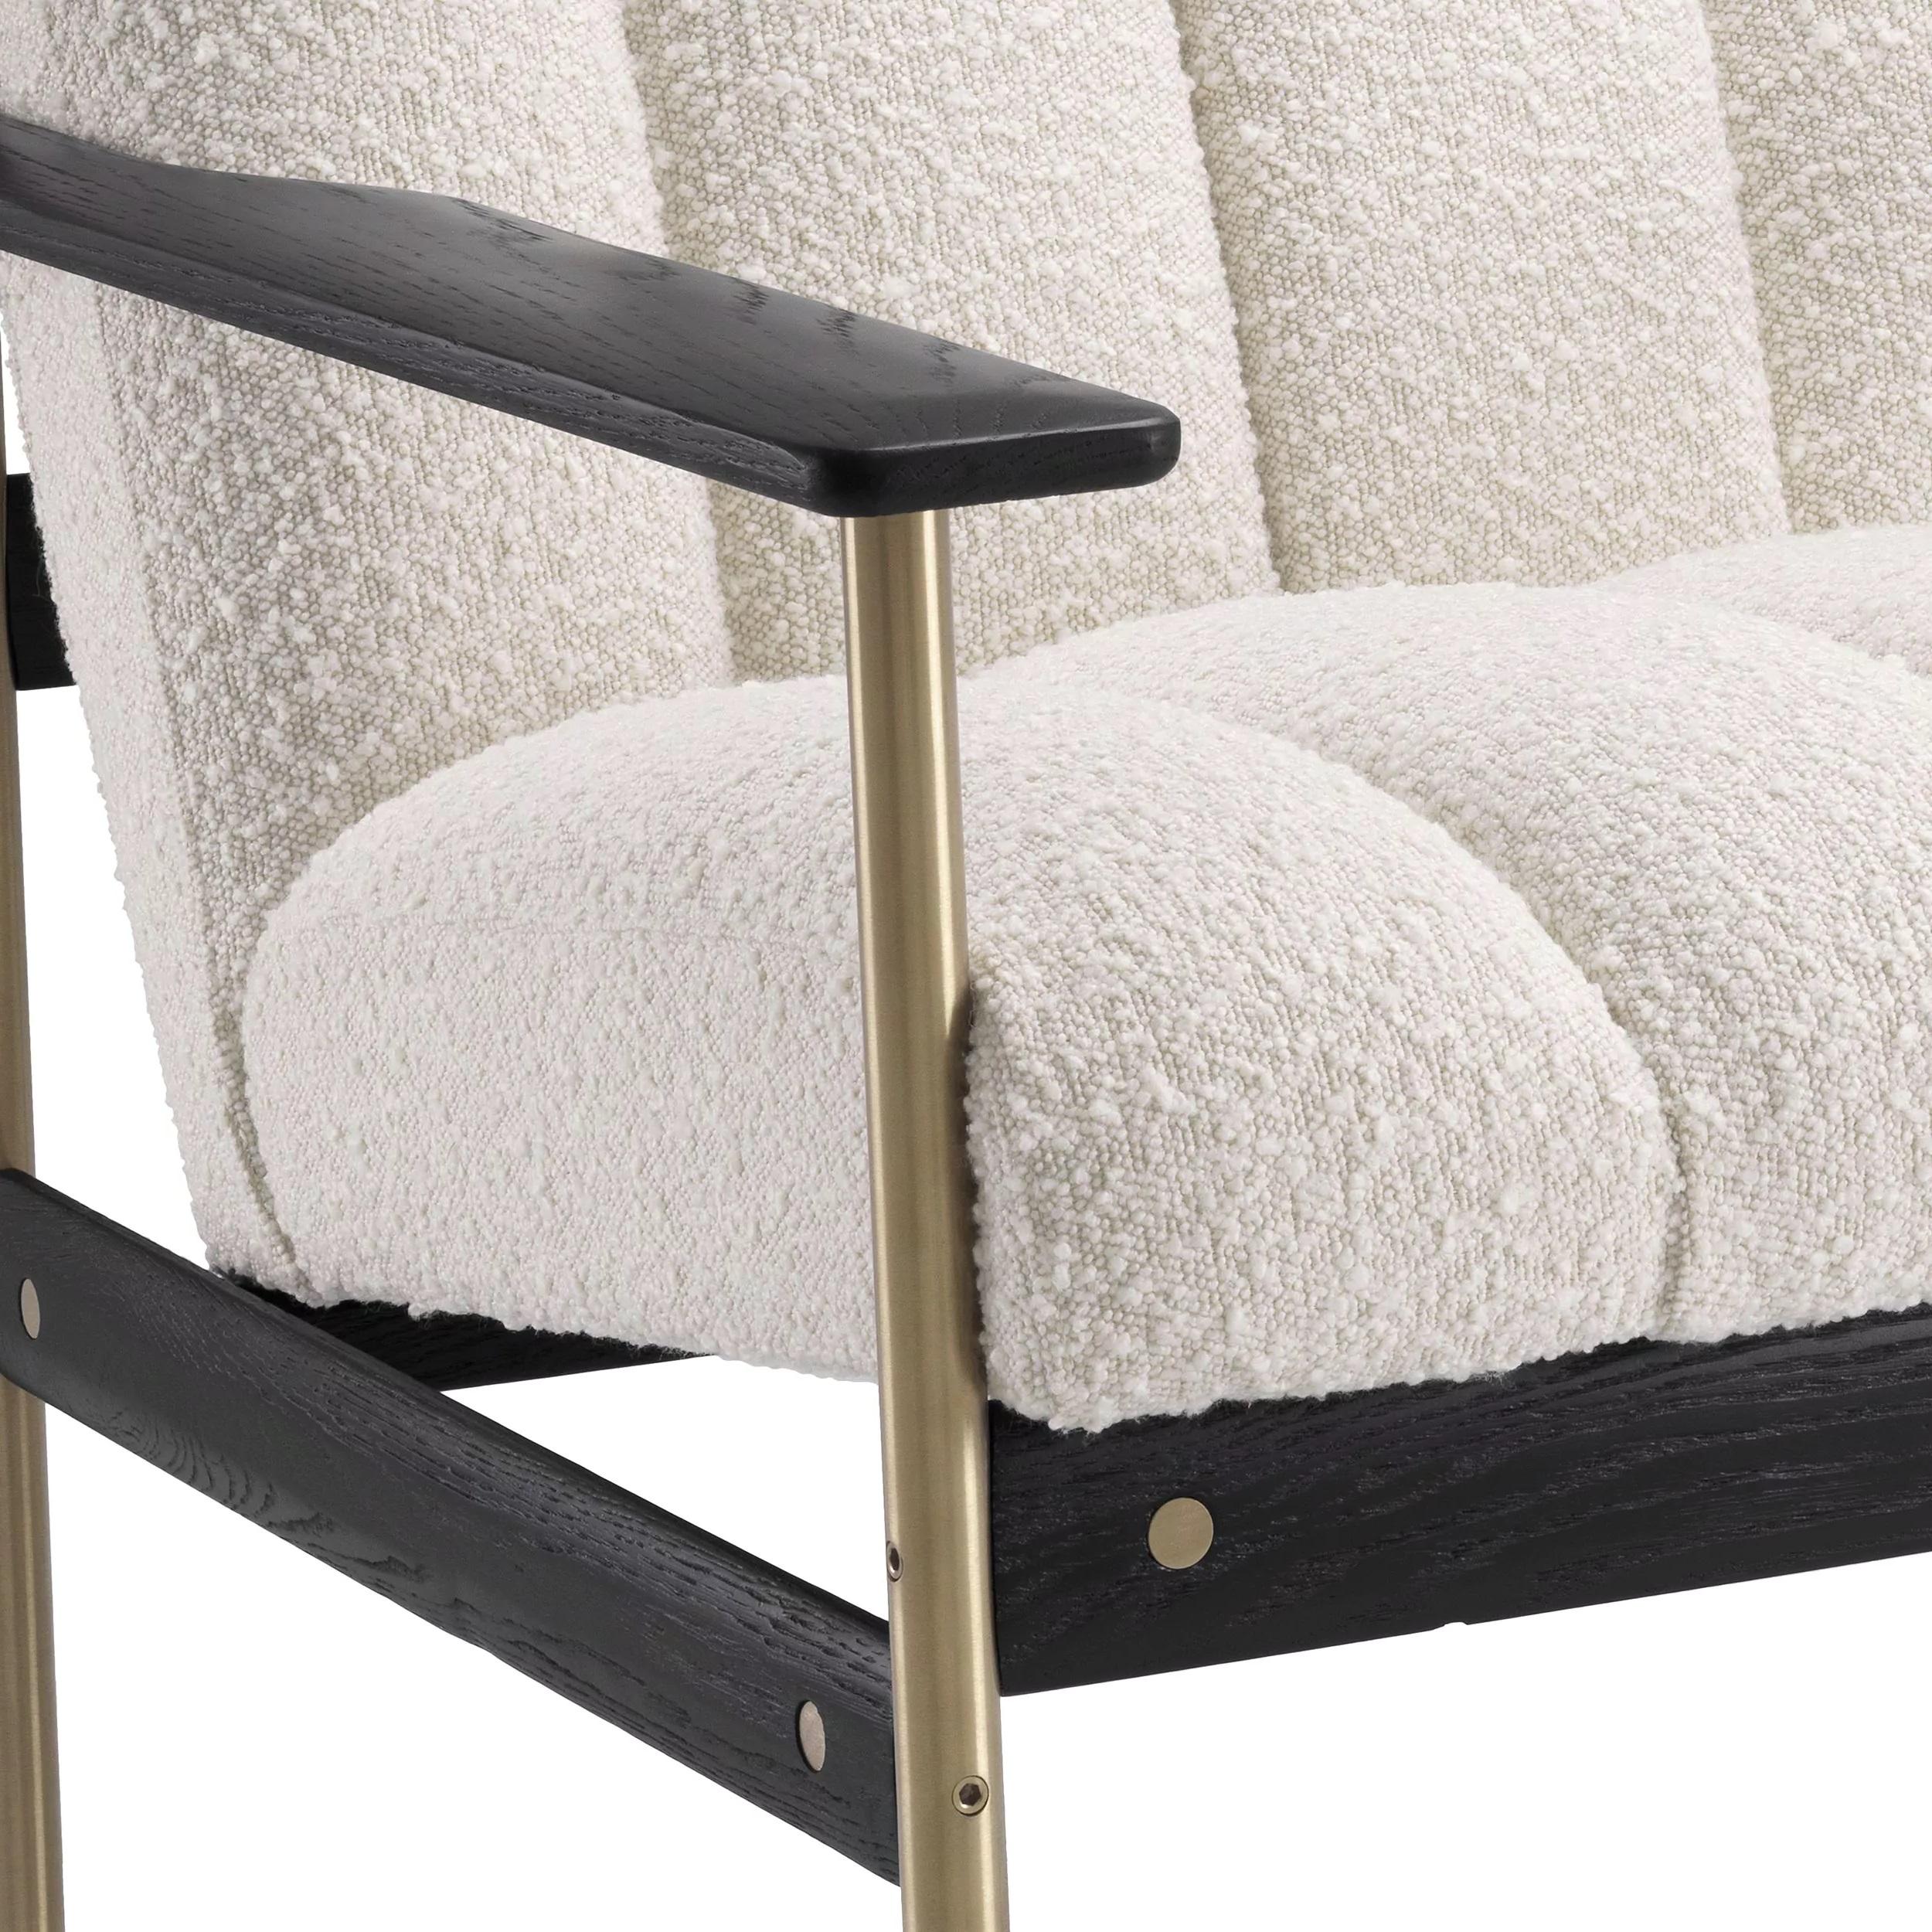 Sessel im skandinavischen Design der 1960er Jahre mit Messinggestell, schwarzen Holzoberflächen und Bouclé-Stoffrücken und -sitz.